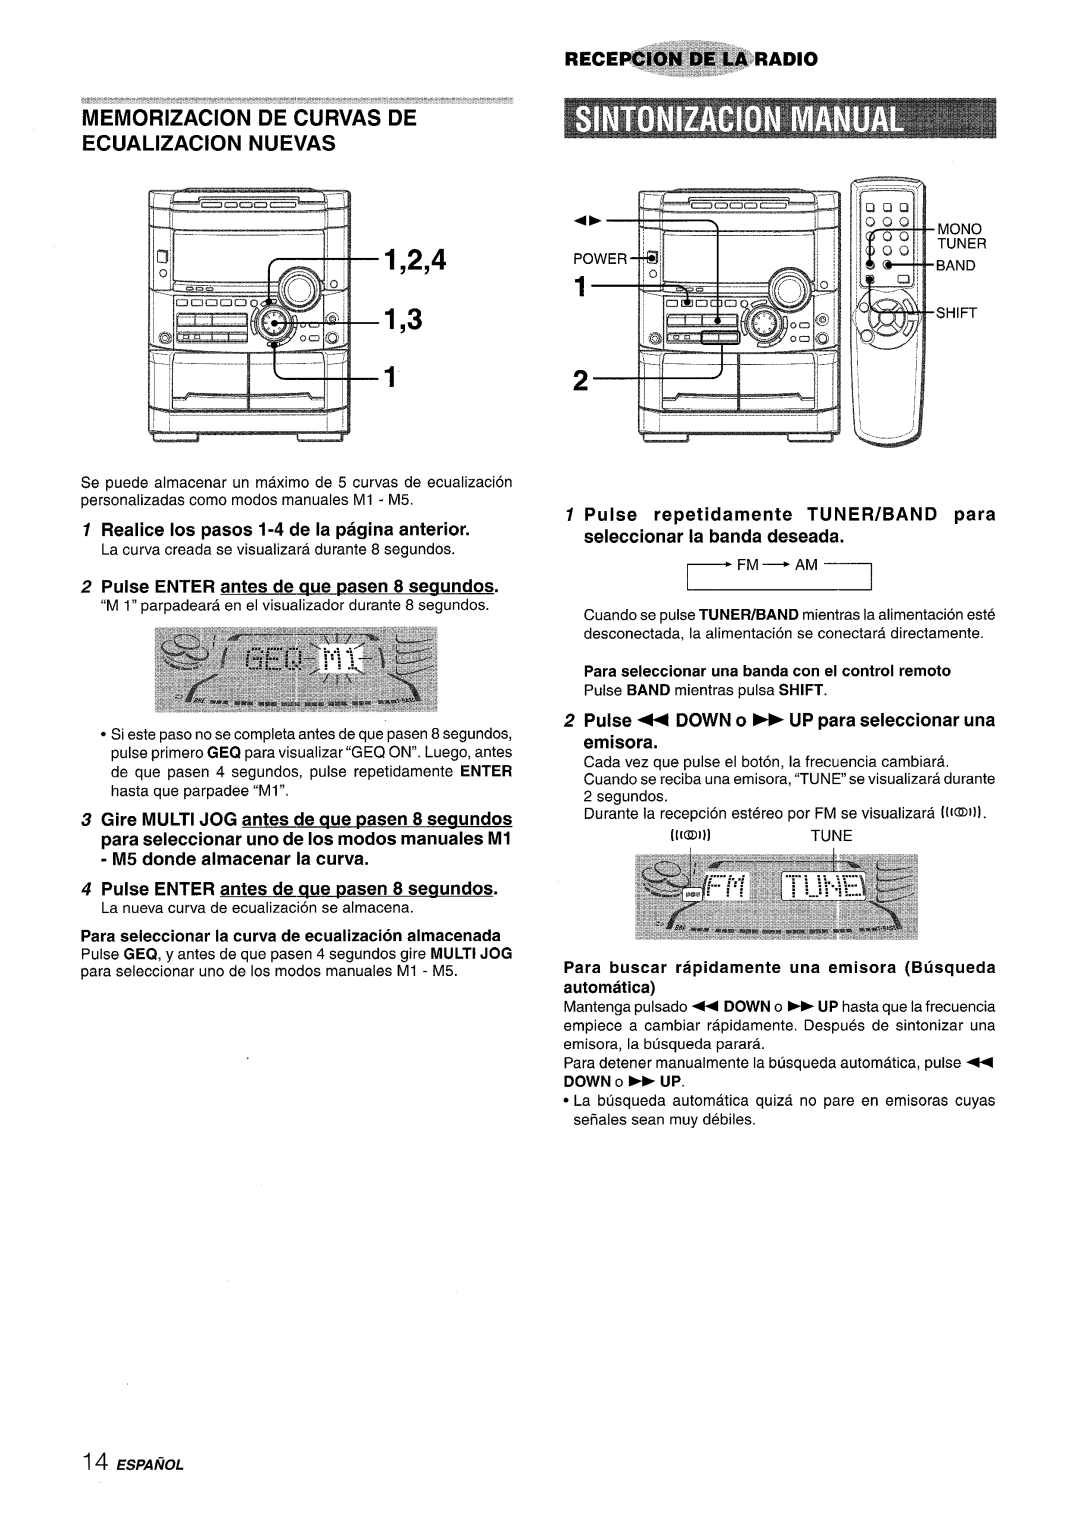 Sony NSX-A777 Realice Ios pasos 1-4 de la pagina anterior, Pulse ENTER antes de aue ~asen 8 seaundos, 1,2,4 1,3, ESPAfiOL 